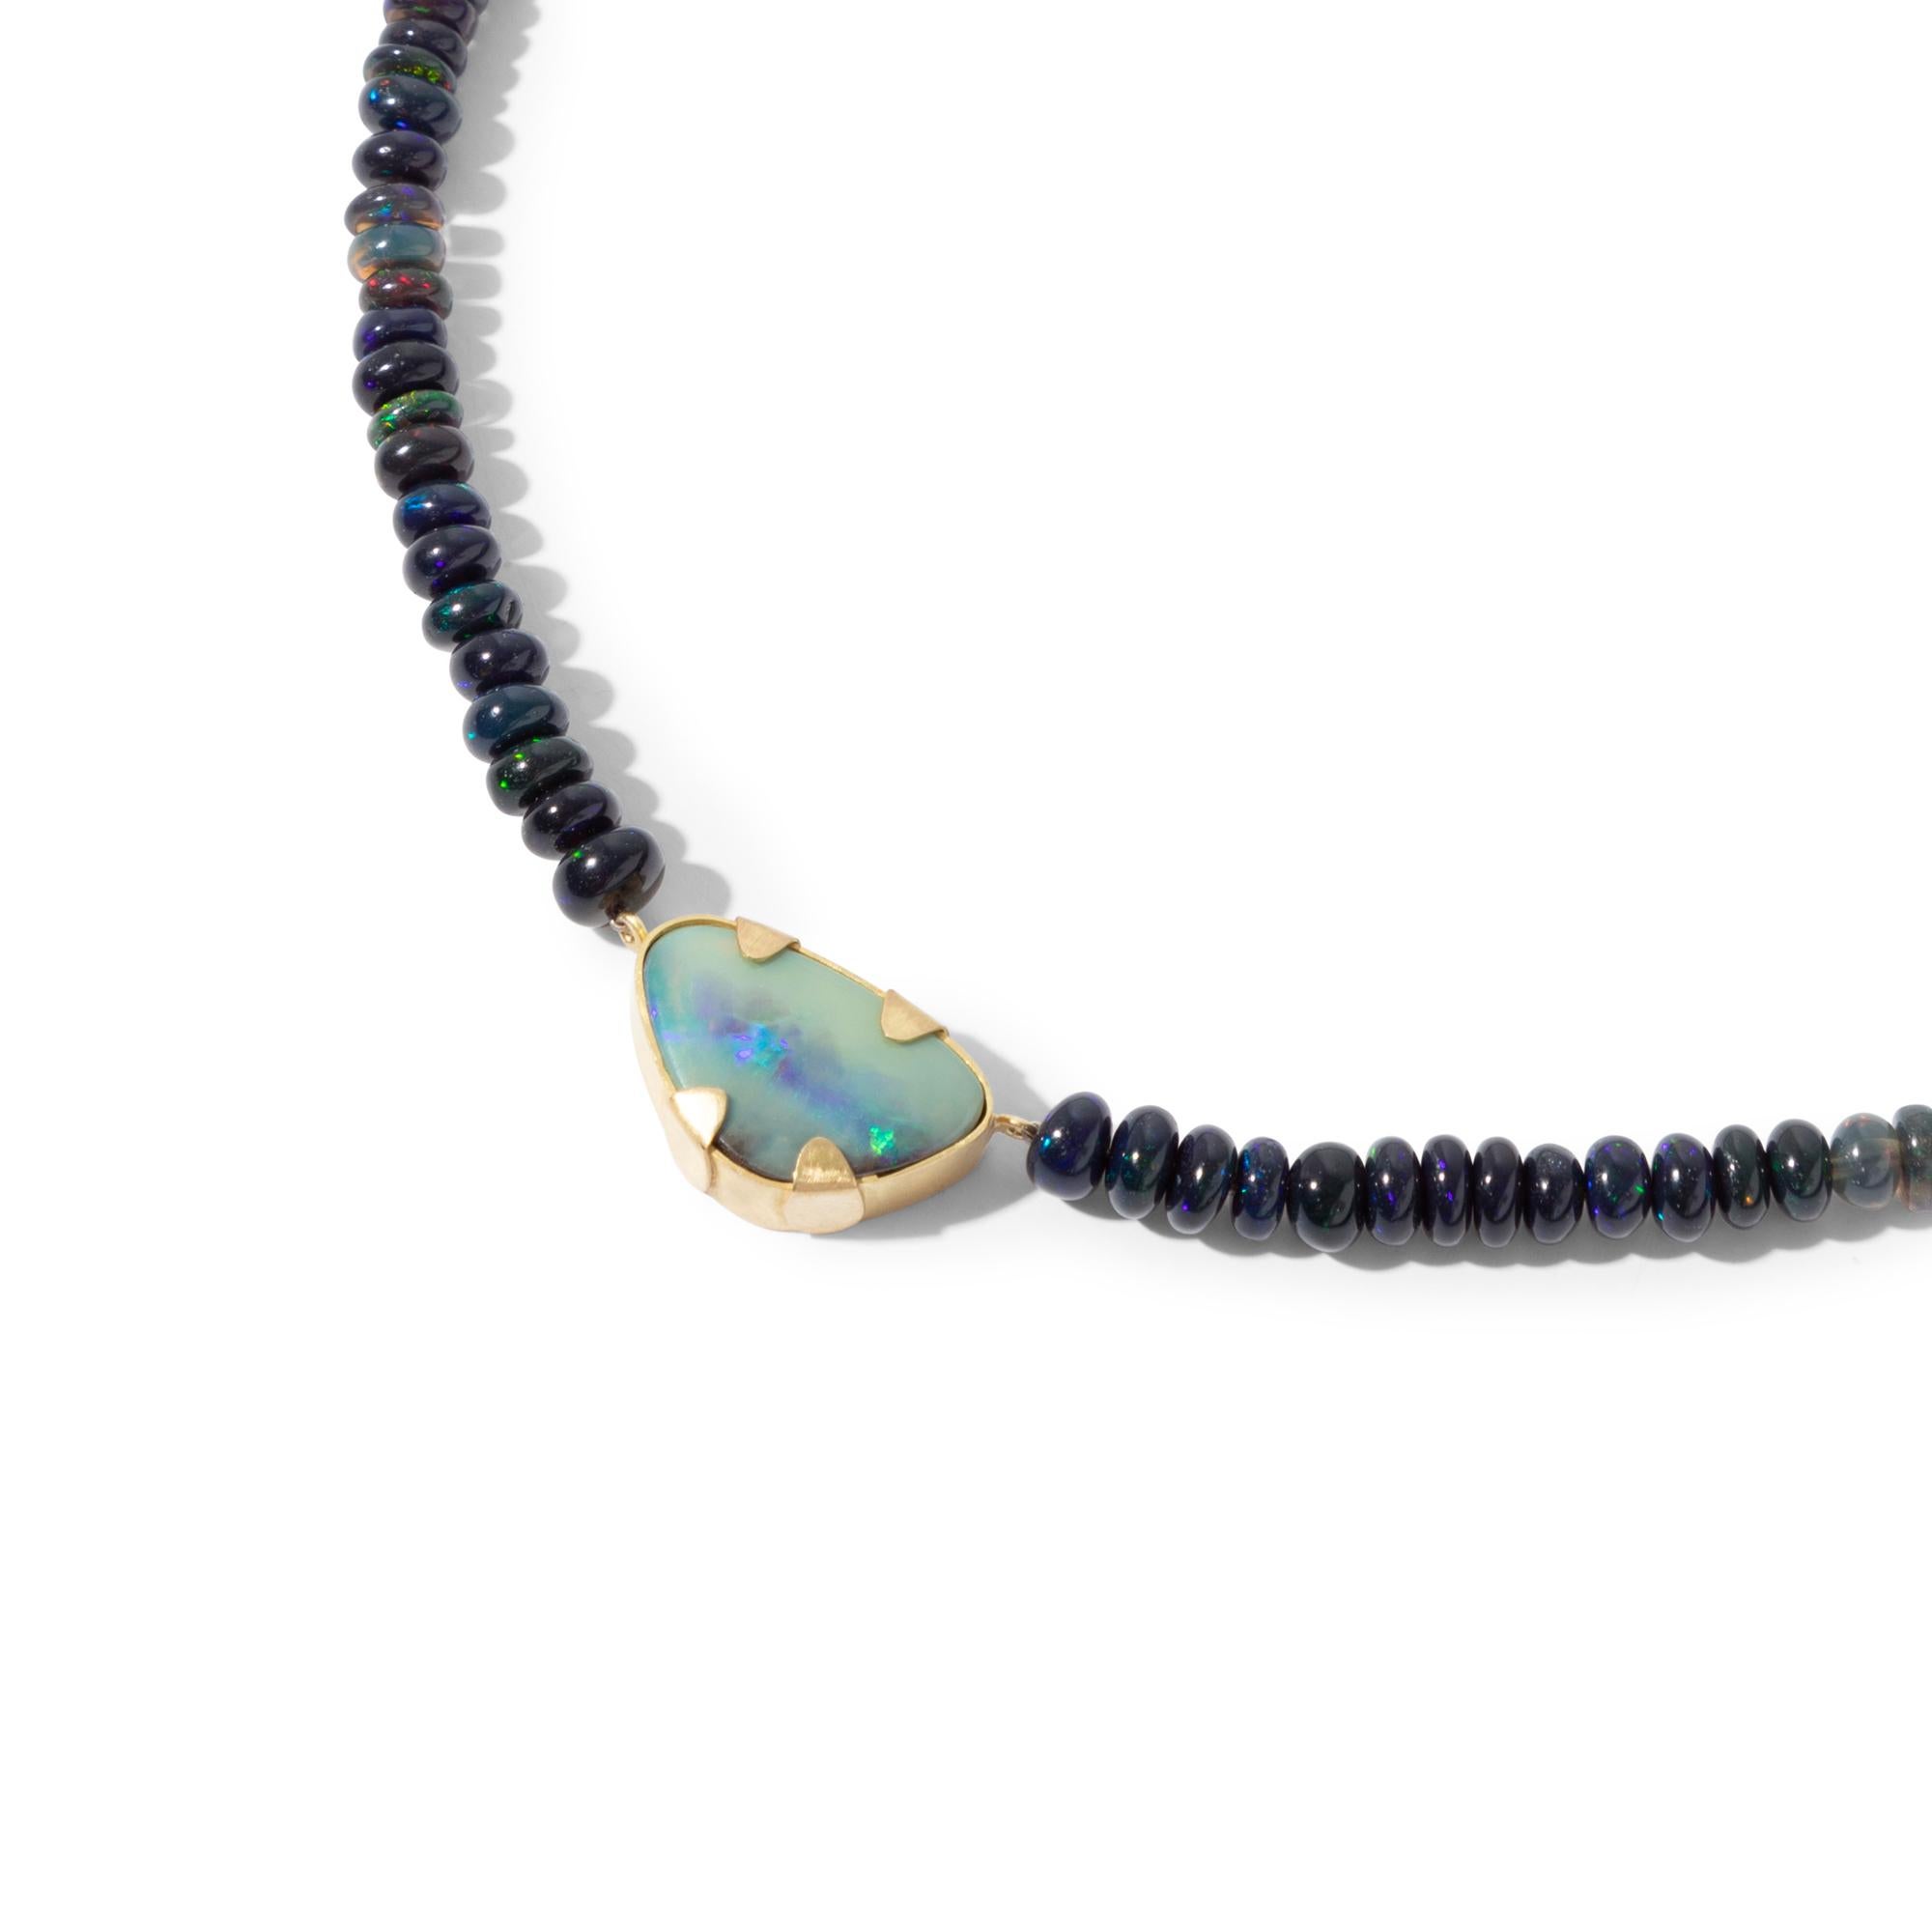 Un collier charmant et fascinant avec un pendentif en opale noire naturelle d'Australie enfilé sur des perles d'opale sombre. La bande iridescente qui traverse l'opale de roche montre beaucoup de 